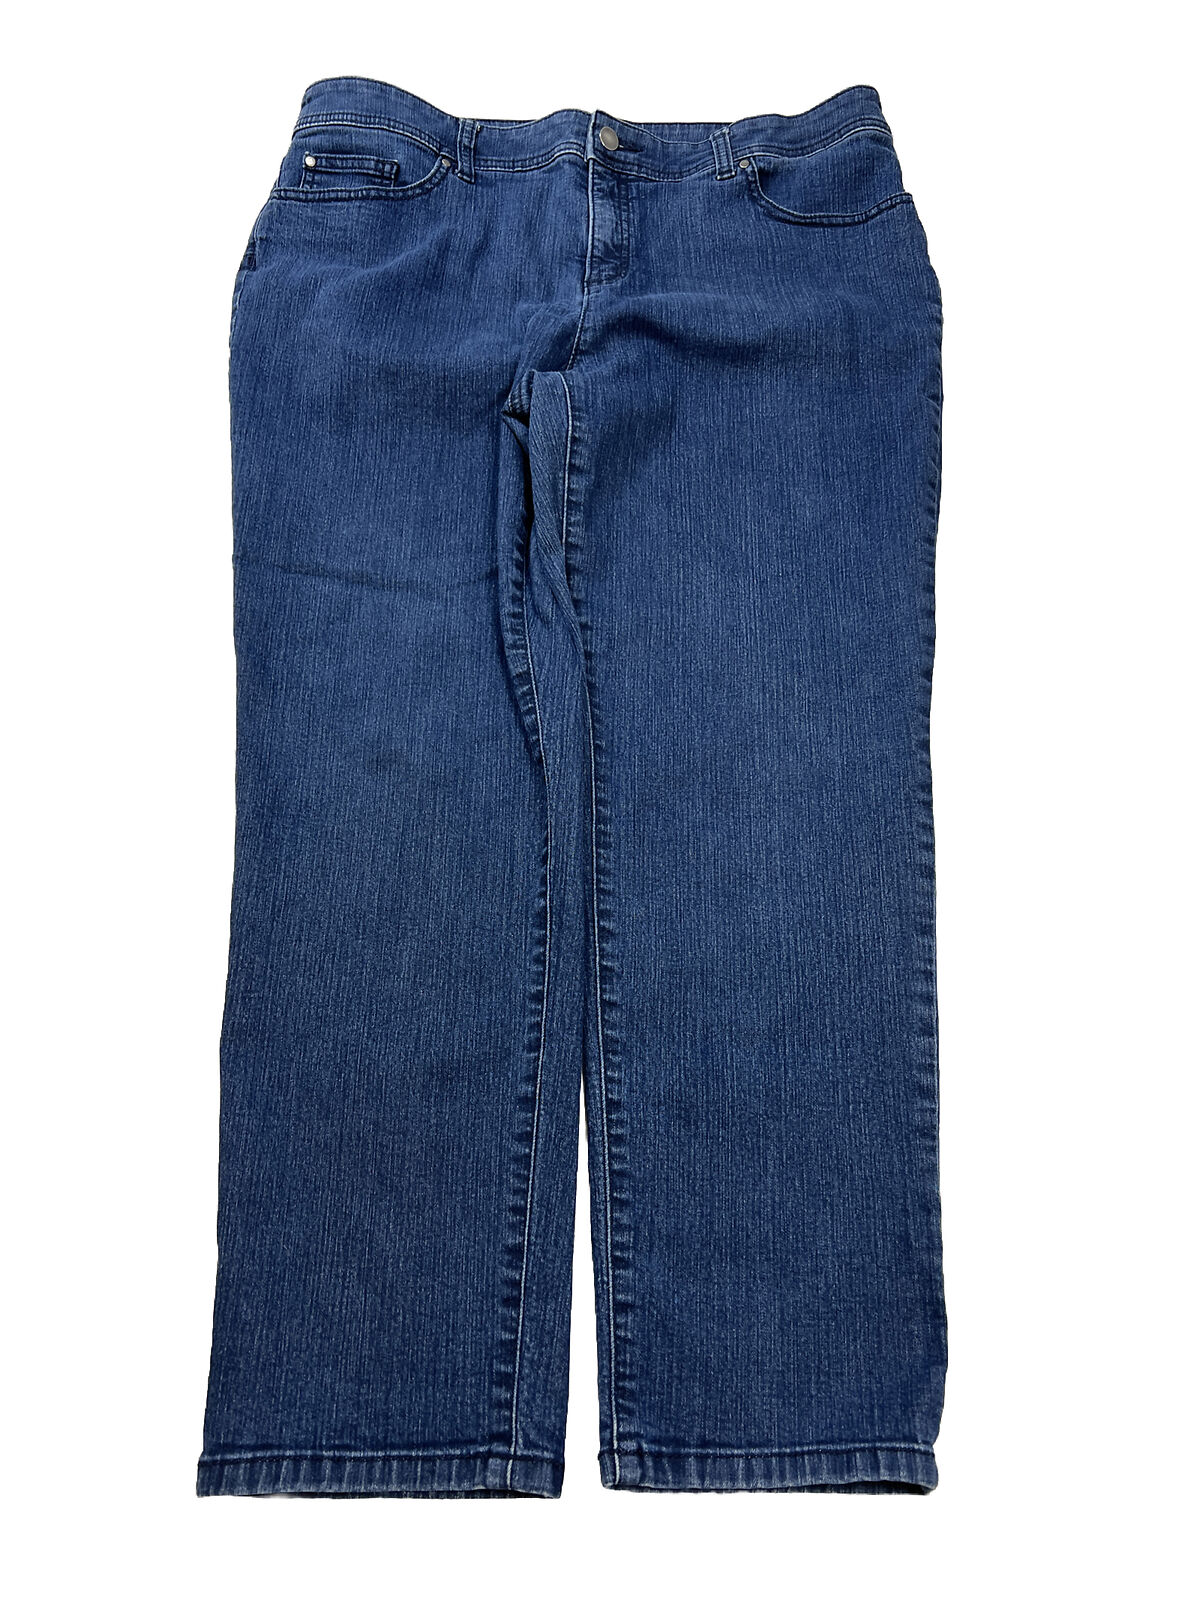 Chico's Women's Dark Wash Slimming Girlfriend Slim Crop Jeans